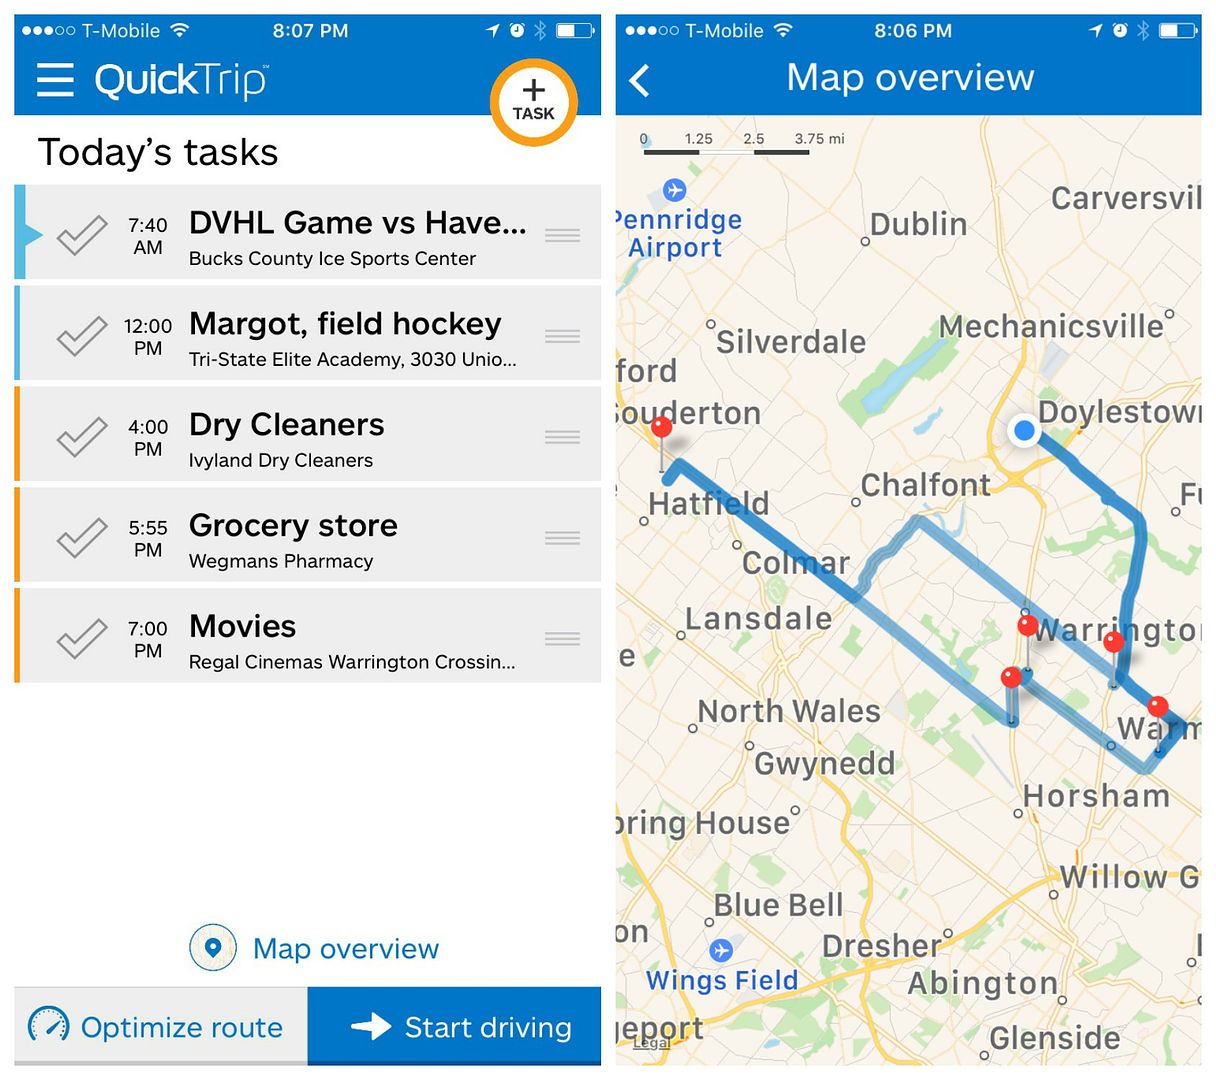 a QuickTrip alkalmazás optimalizálja a teendők listáját, és megadja a legokosabb útvonalakat, hogy időt takarítson meg